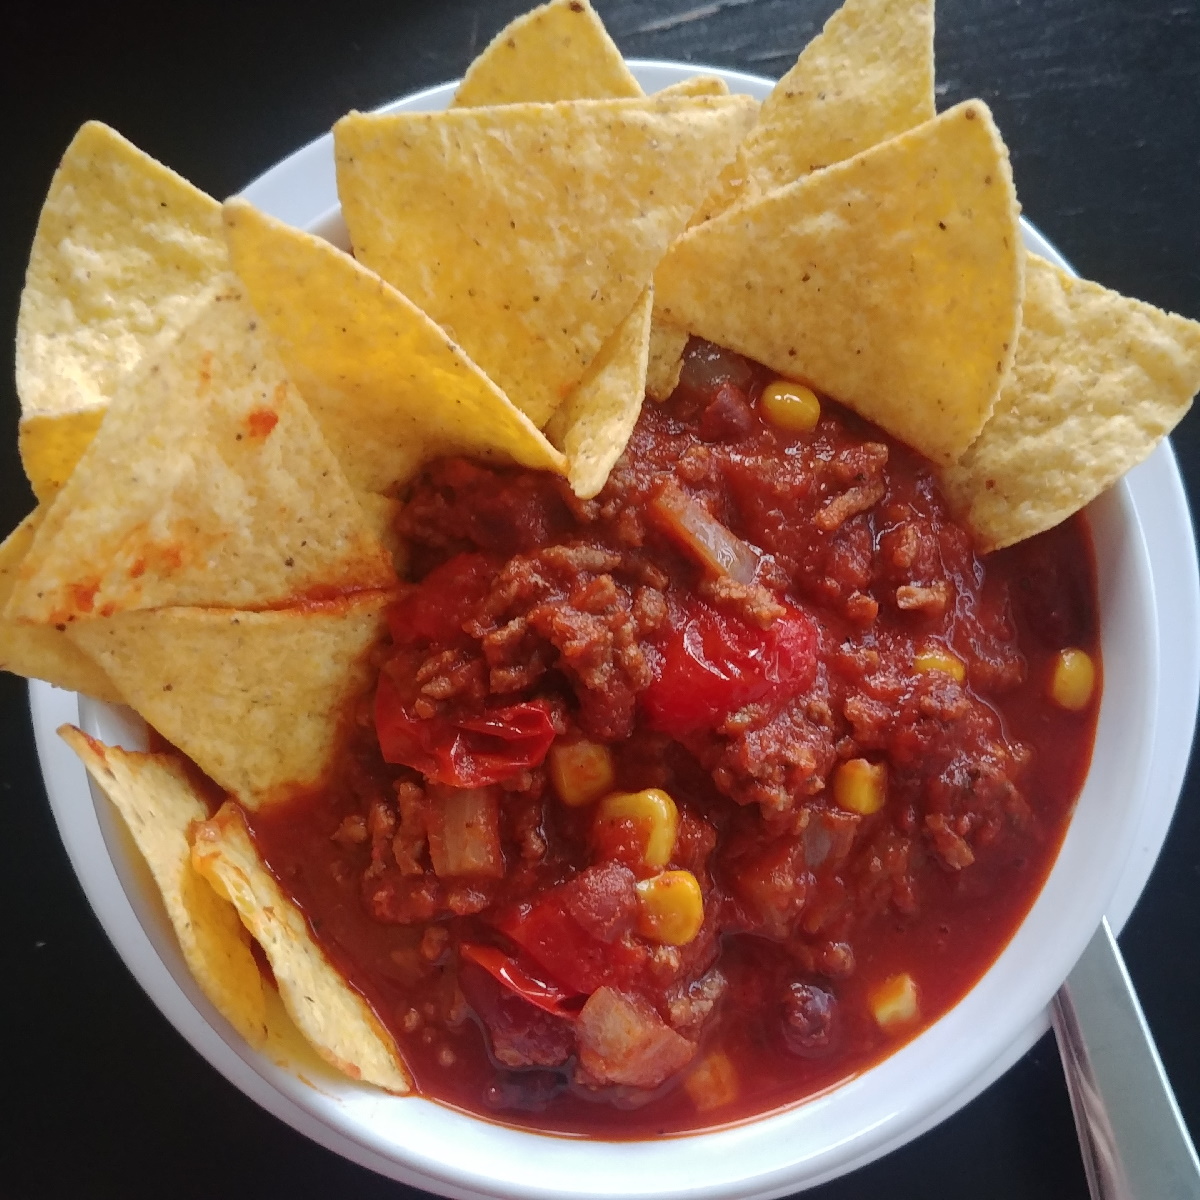 a salsa I made